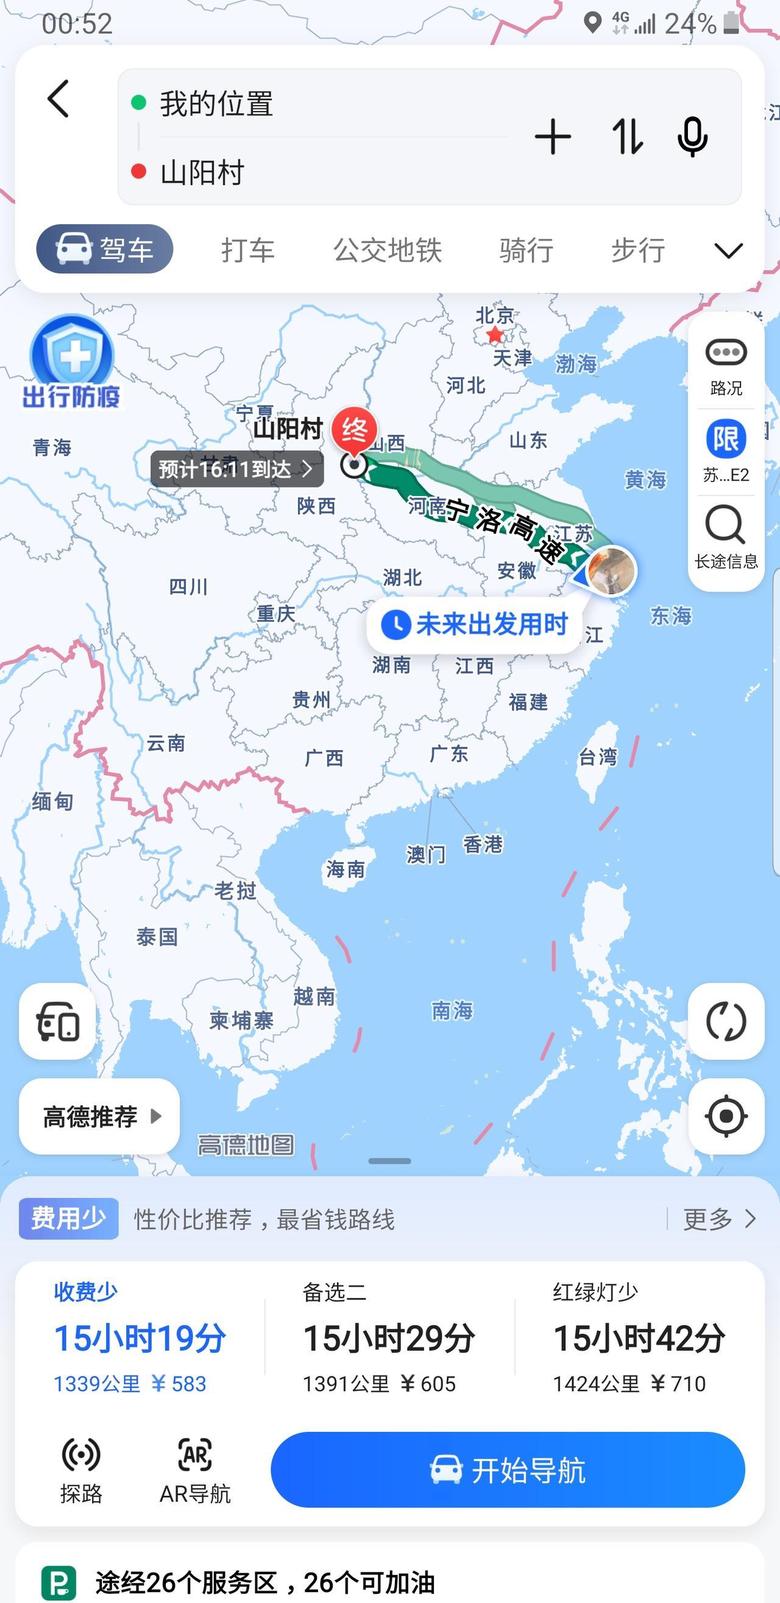 比亚迪f3 不知道我这距离算不算远……，反正弟弟从深圳回老家要1850公里。相比他我这还好点。听说连霍高速比宁洛高速好走。不知道是不是真的。